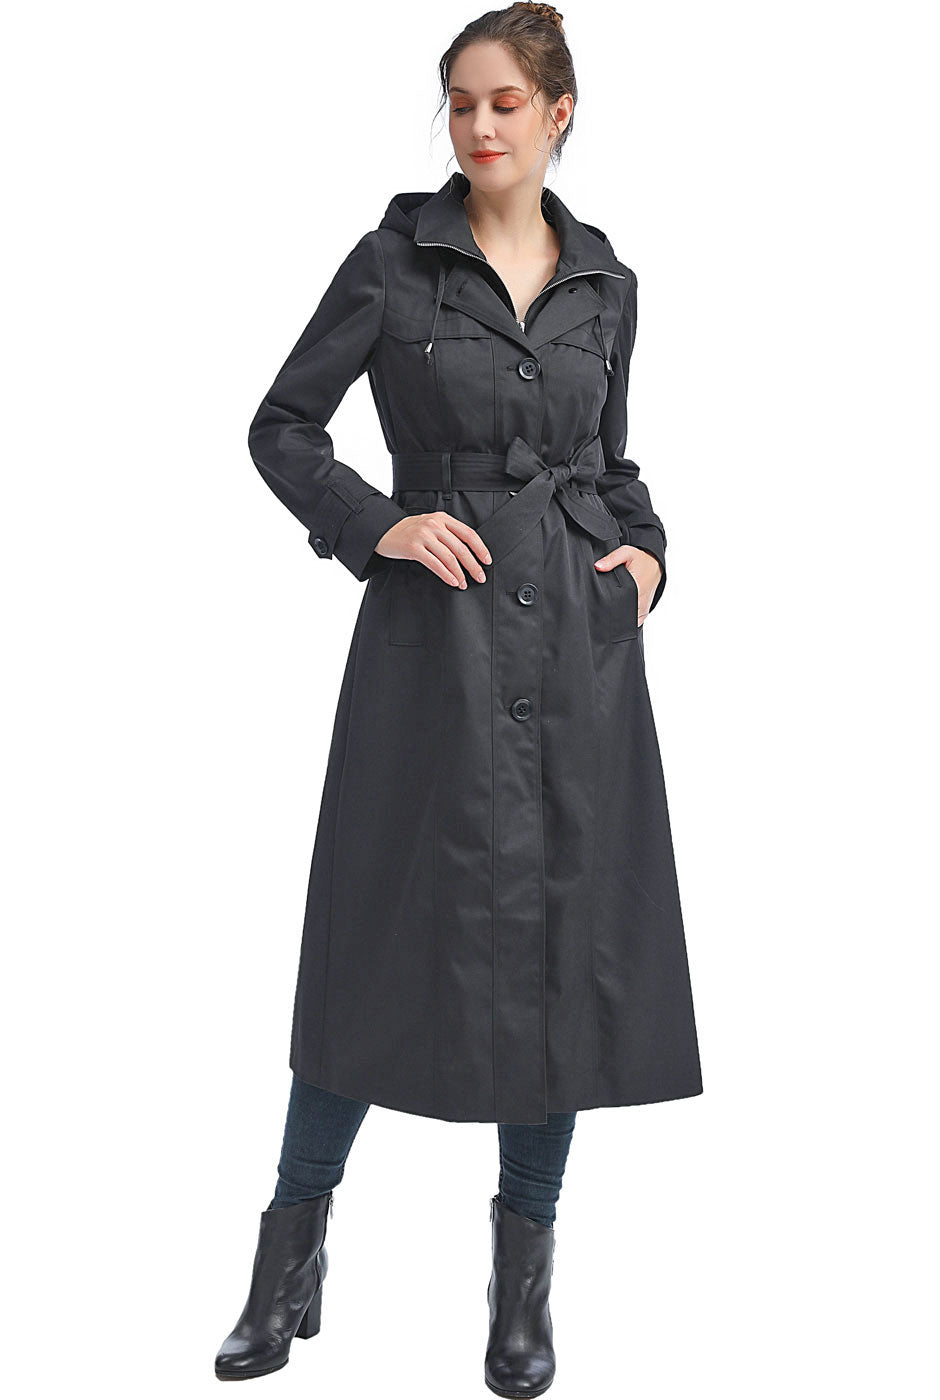 BGSD Women Paula Waterproof Hooded Long Rain Coat